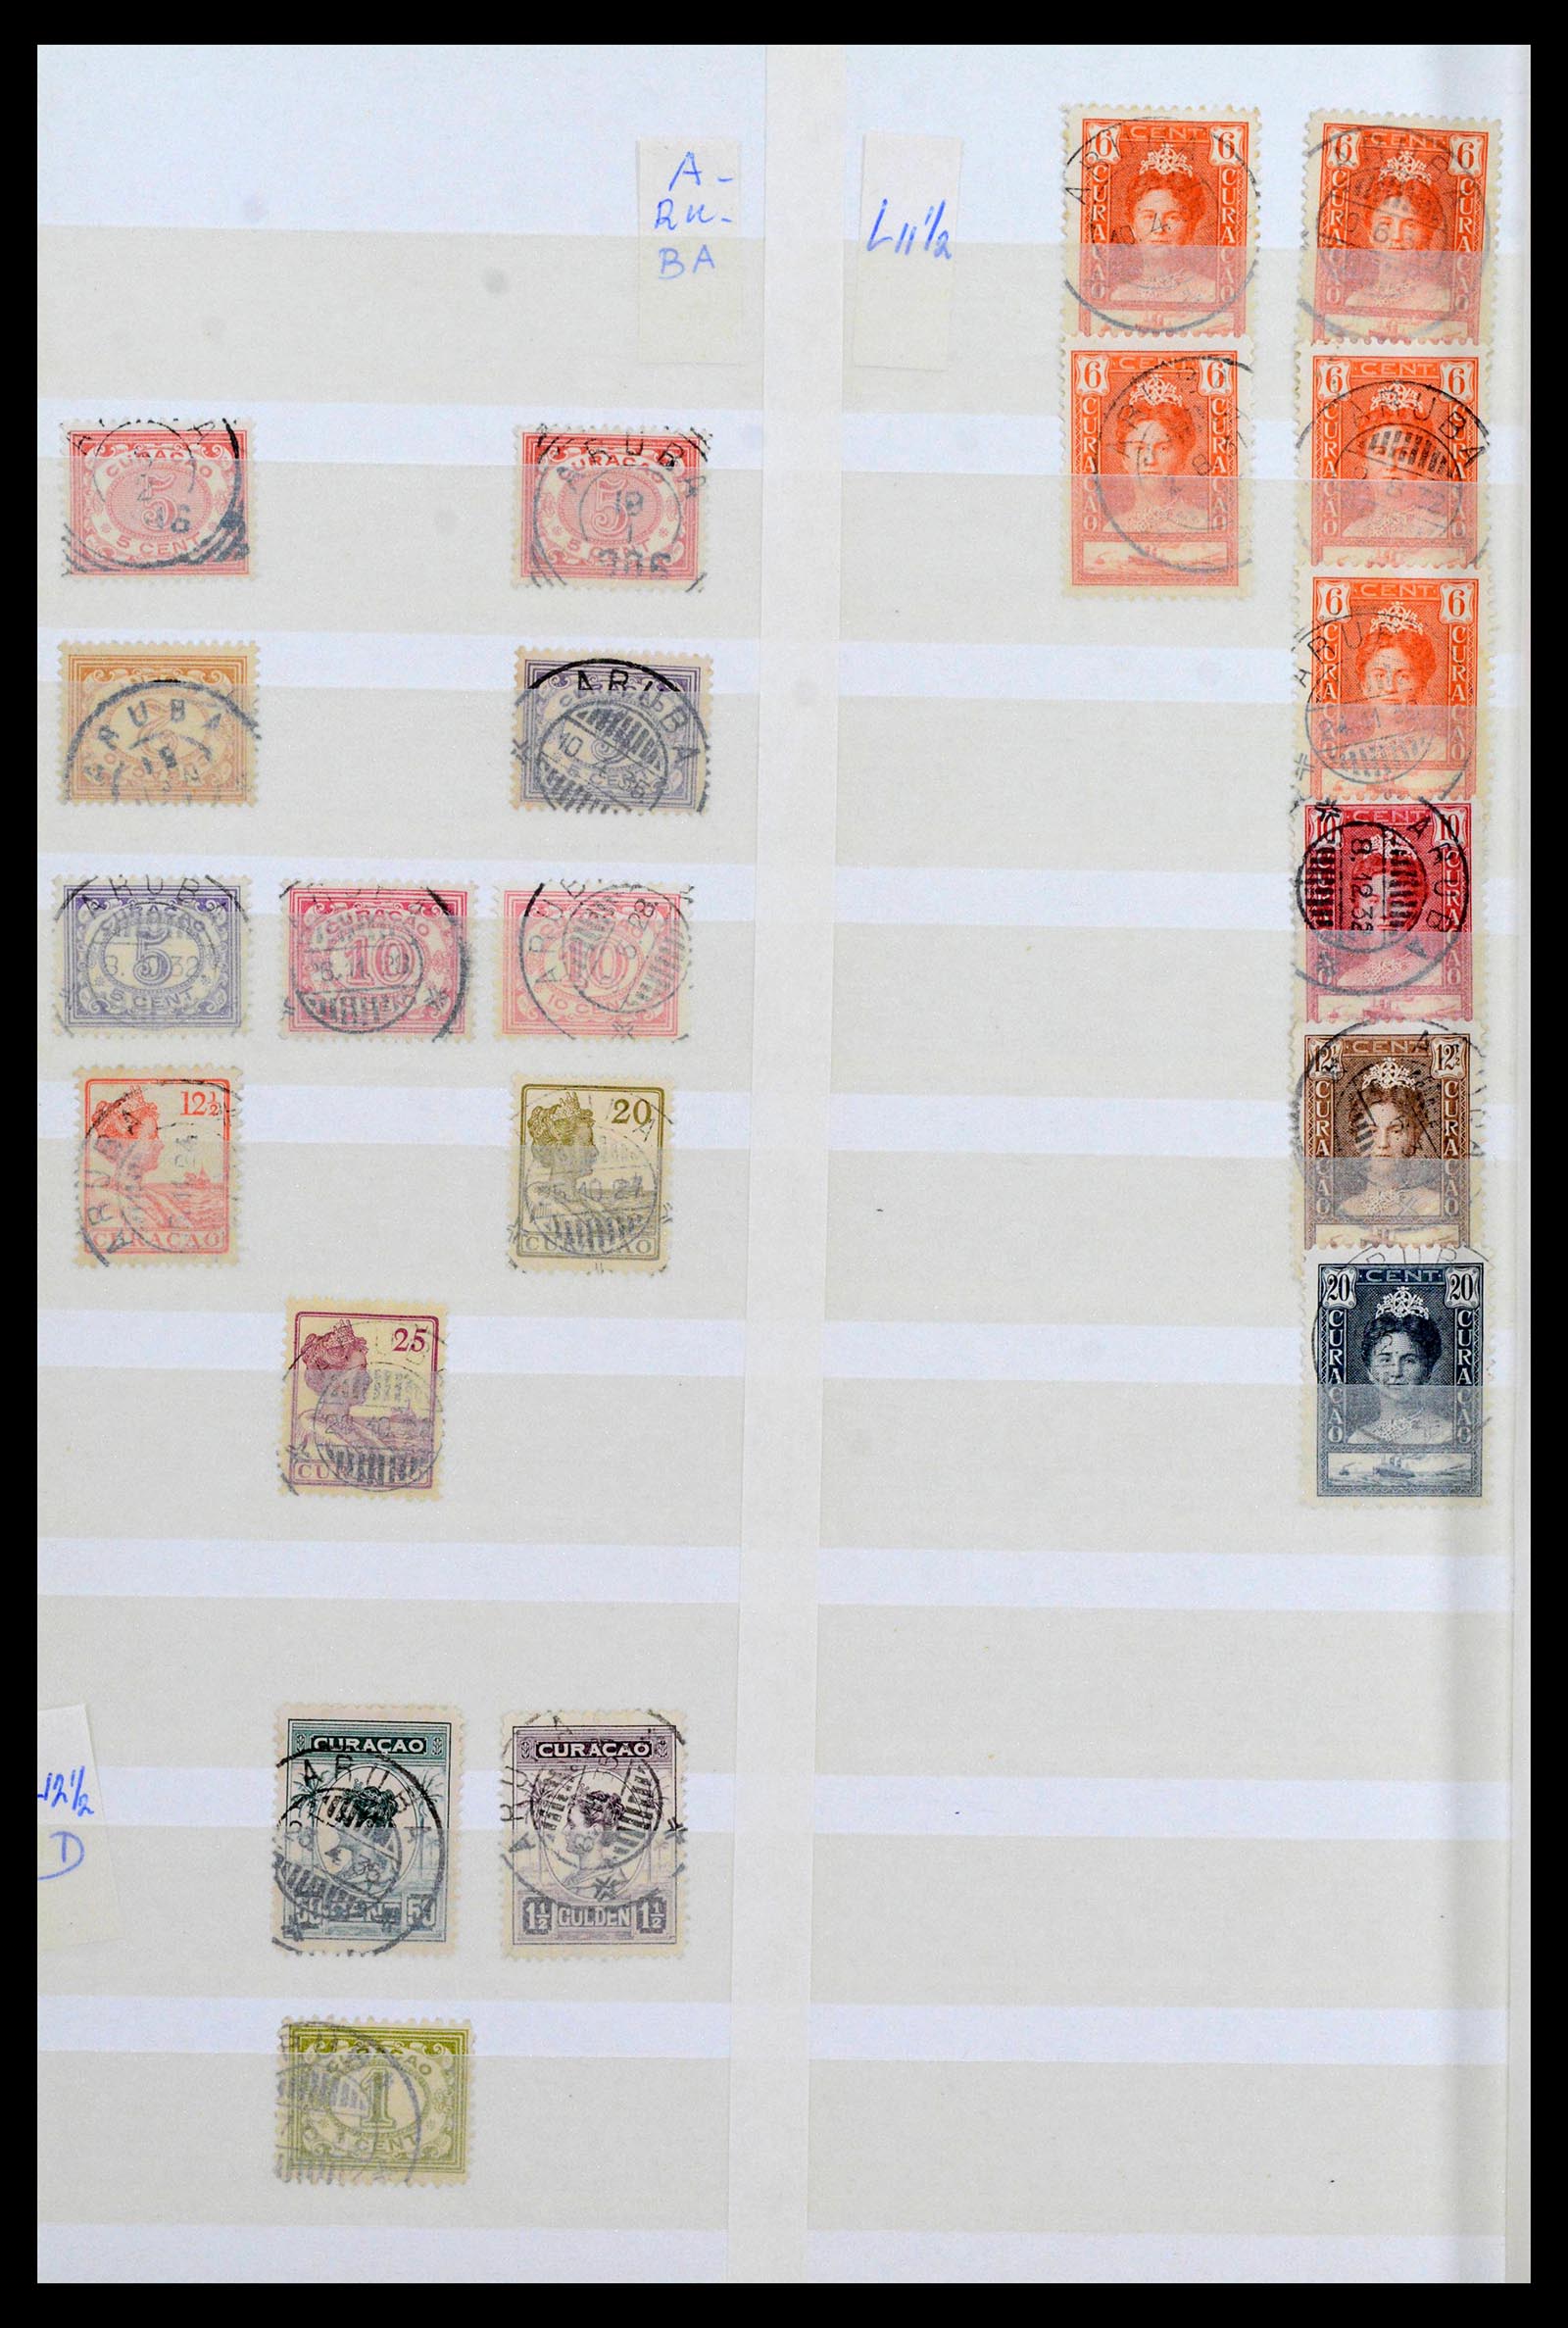 39541 0001 - Postzegelverzameling 39541 Curaçao/Antillen stempels 1873-1970.